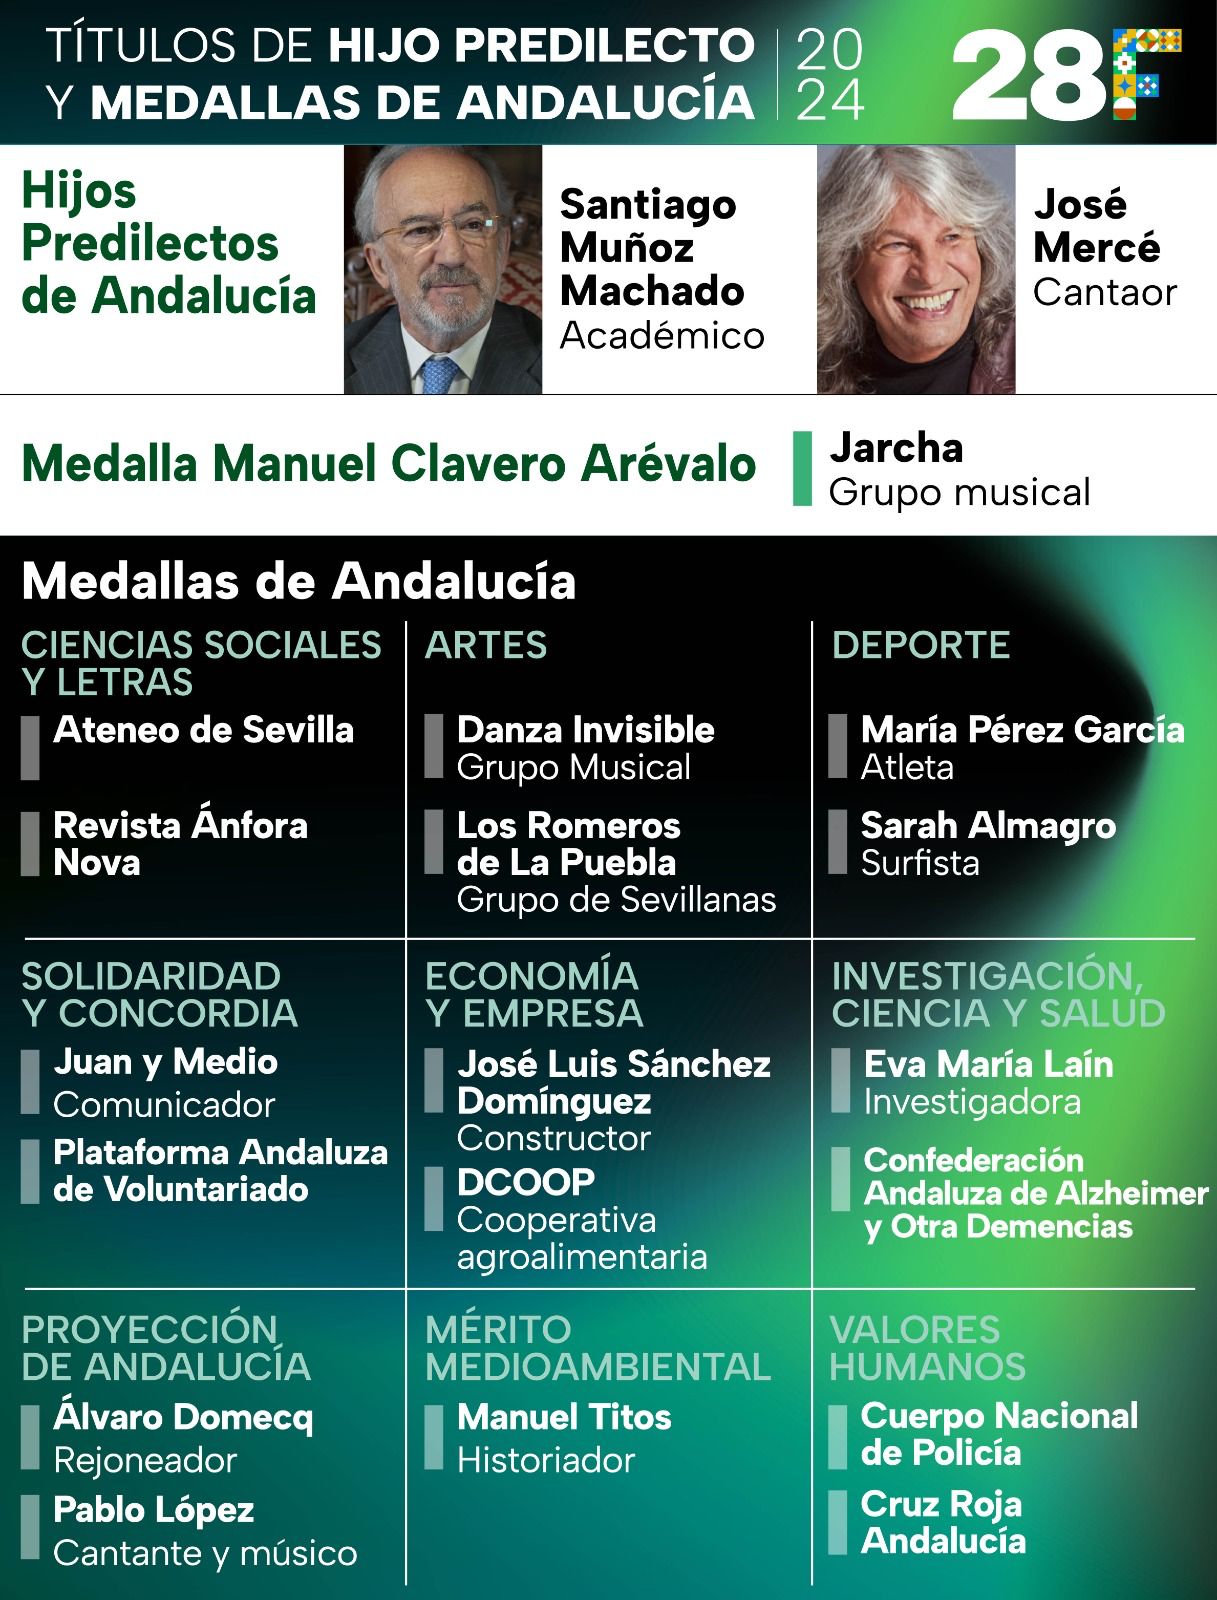 El COIMS aplaude la entrega de la Medalla de Andalucía de la Investigación, la Ciencia y la Salud a Eva María Laín